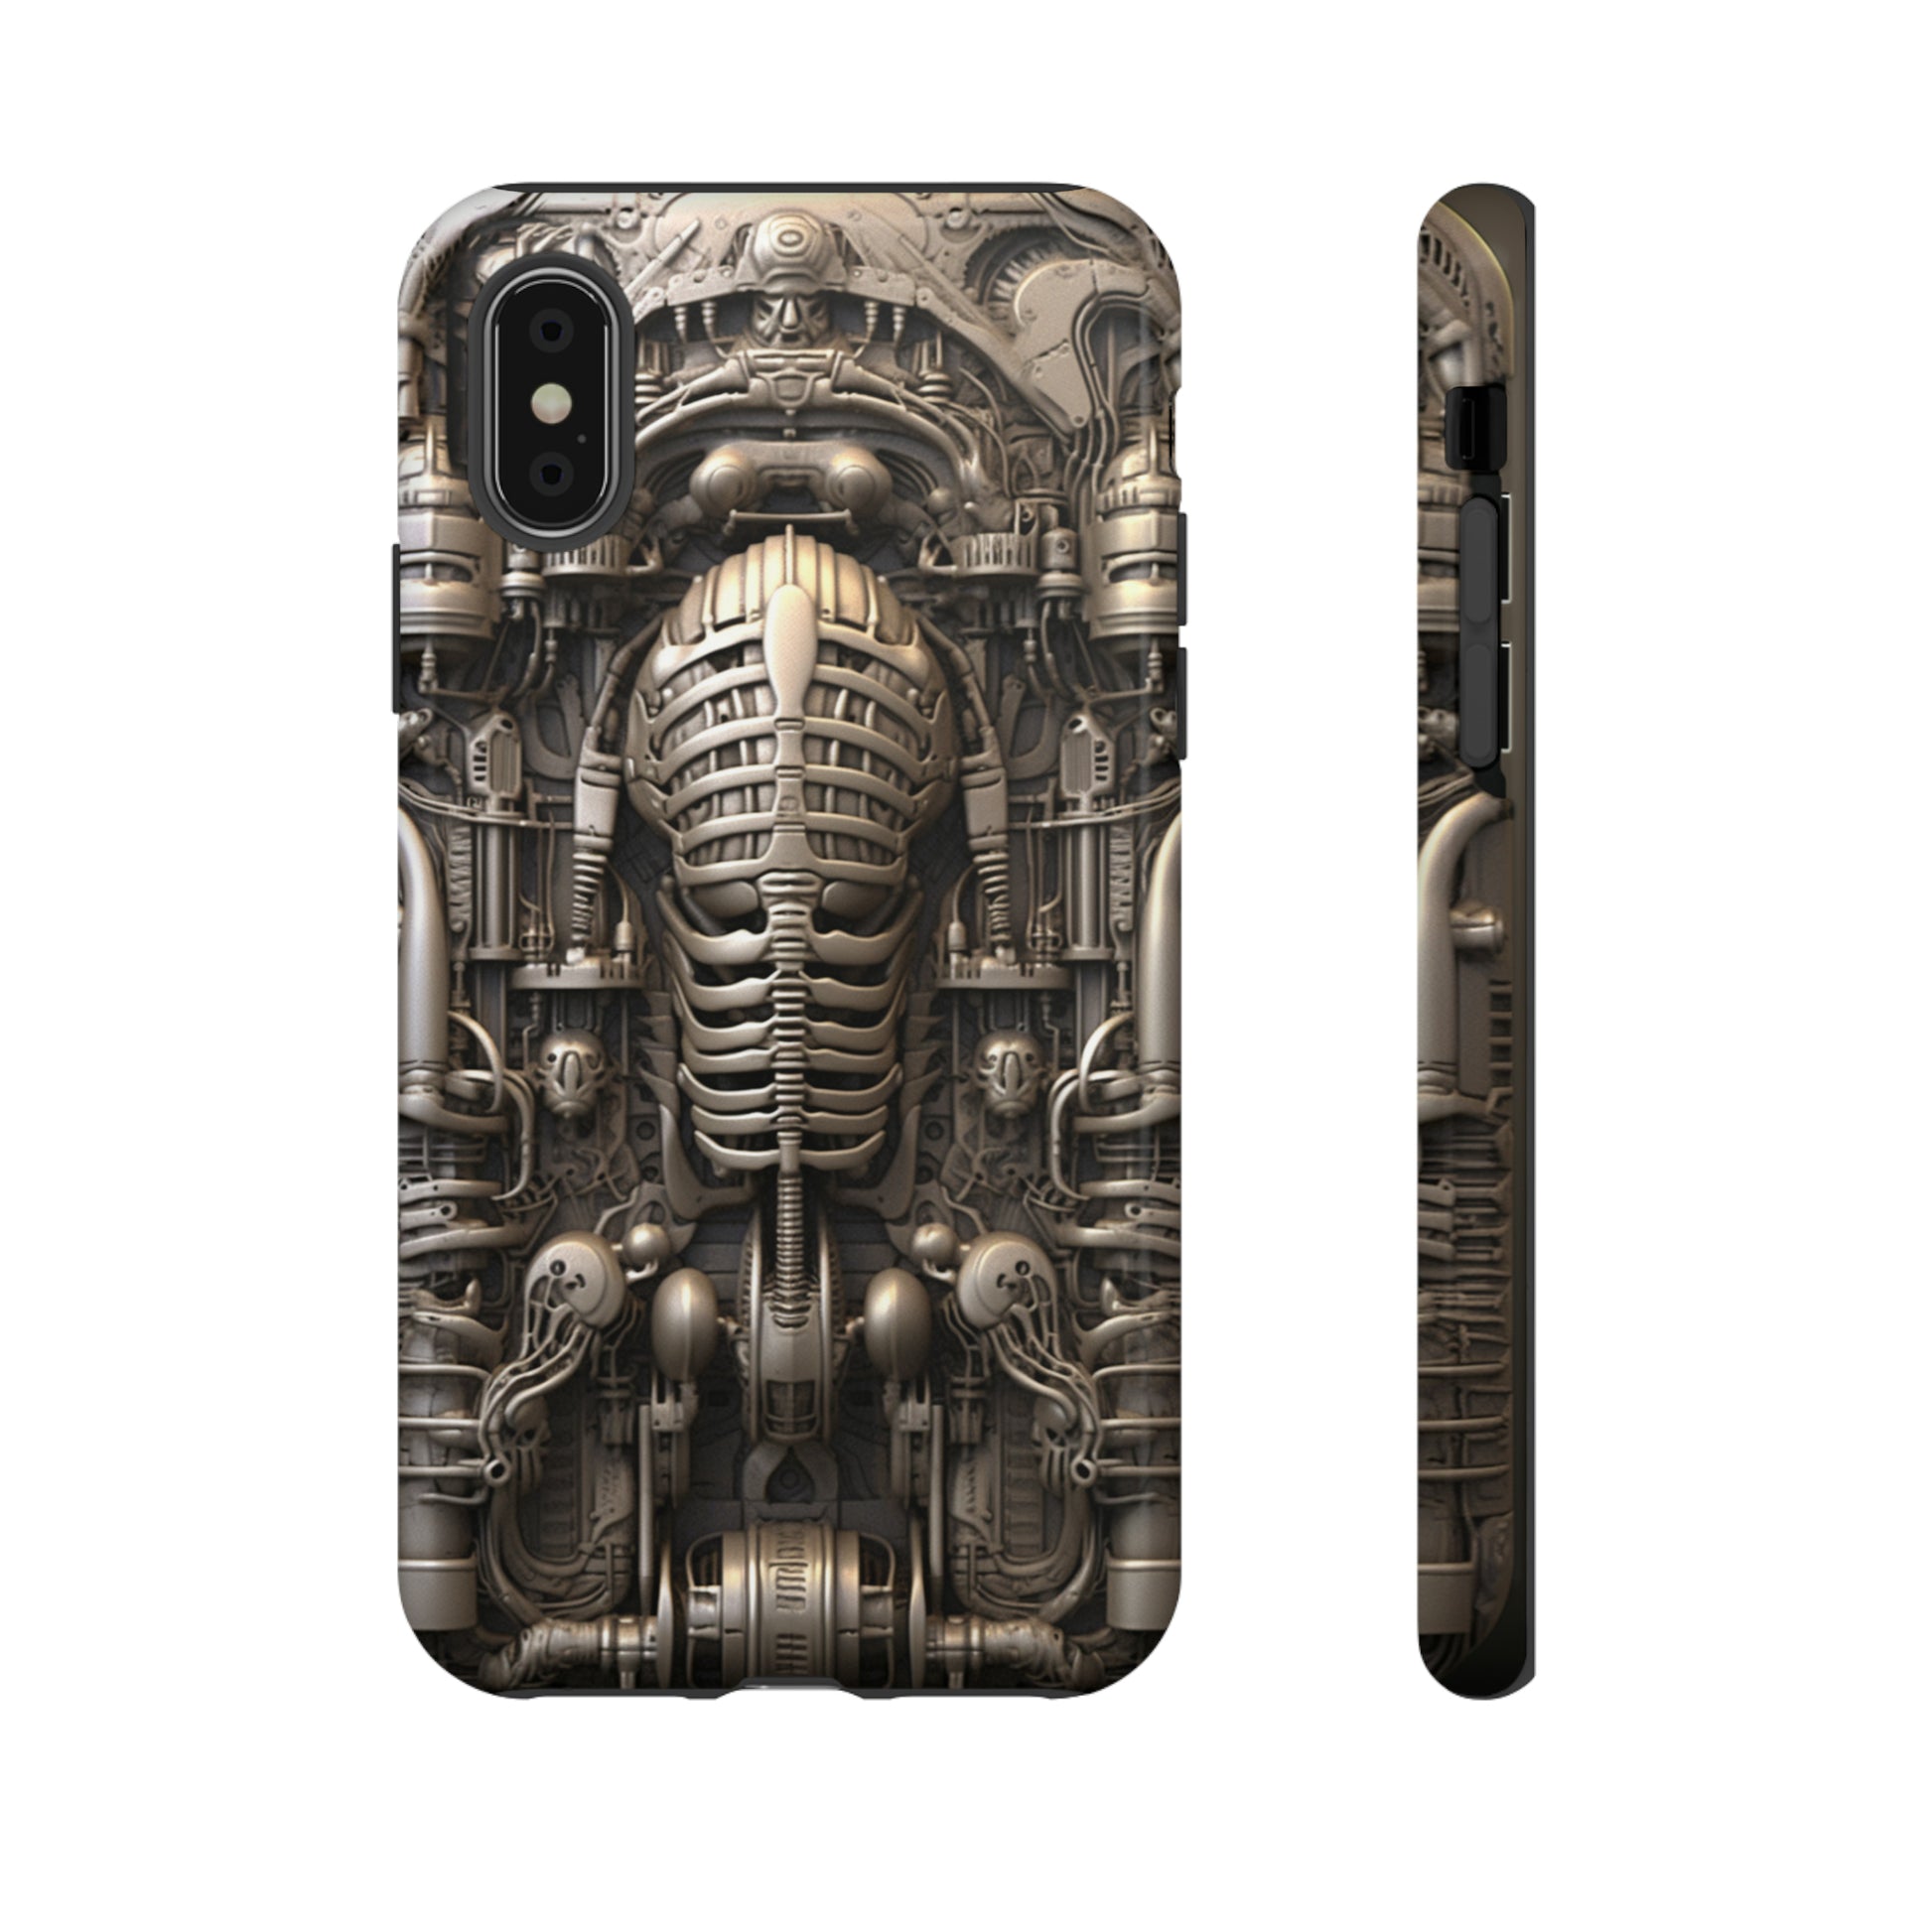 Sci fi art phone case